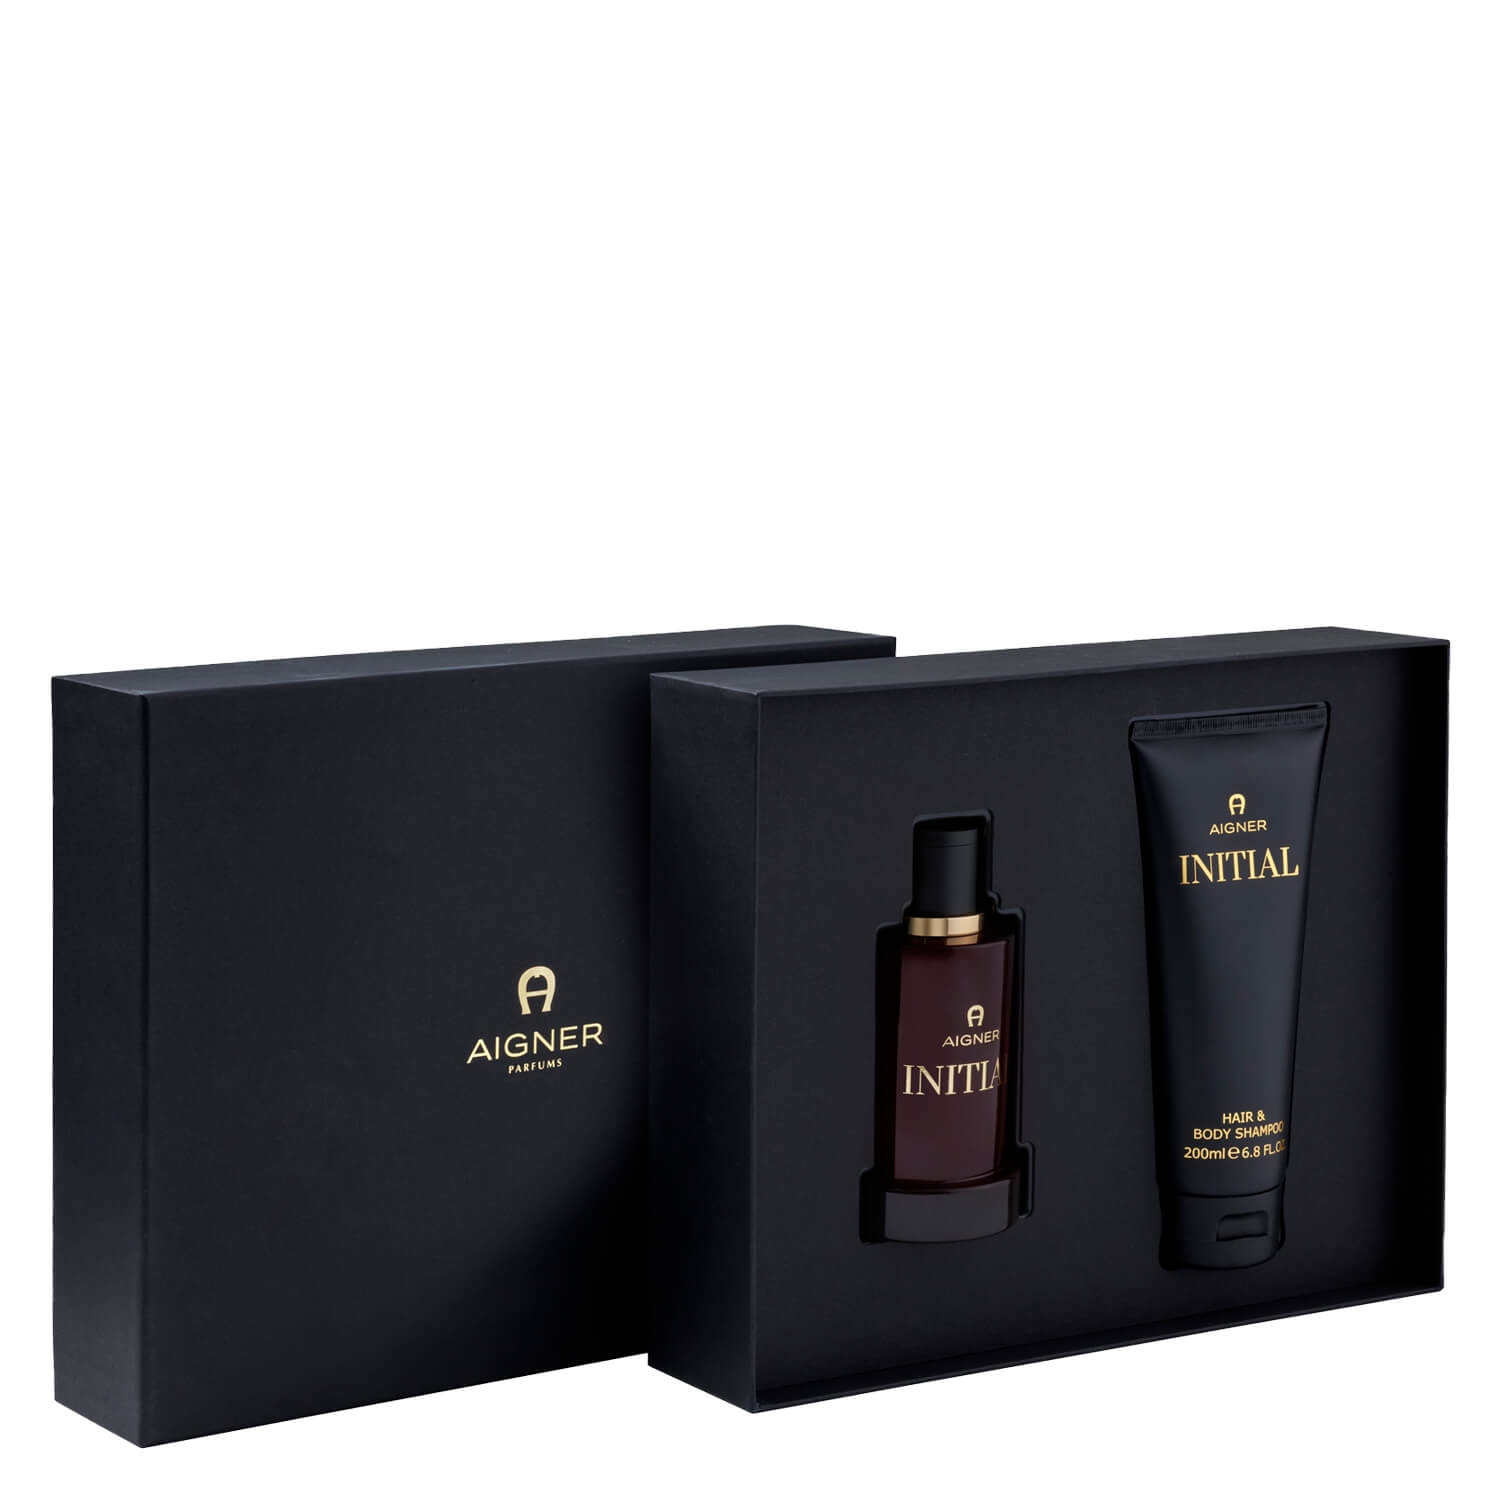 Product image from Aigner - Initial Eau de Parfum Set